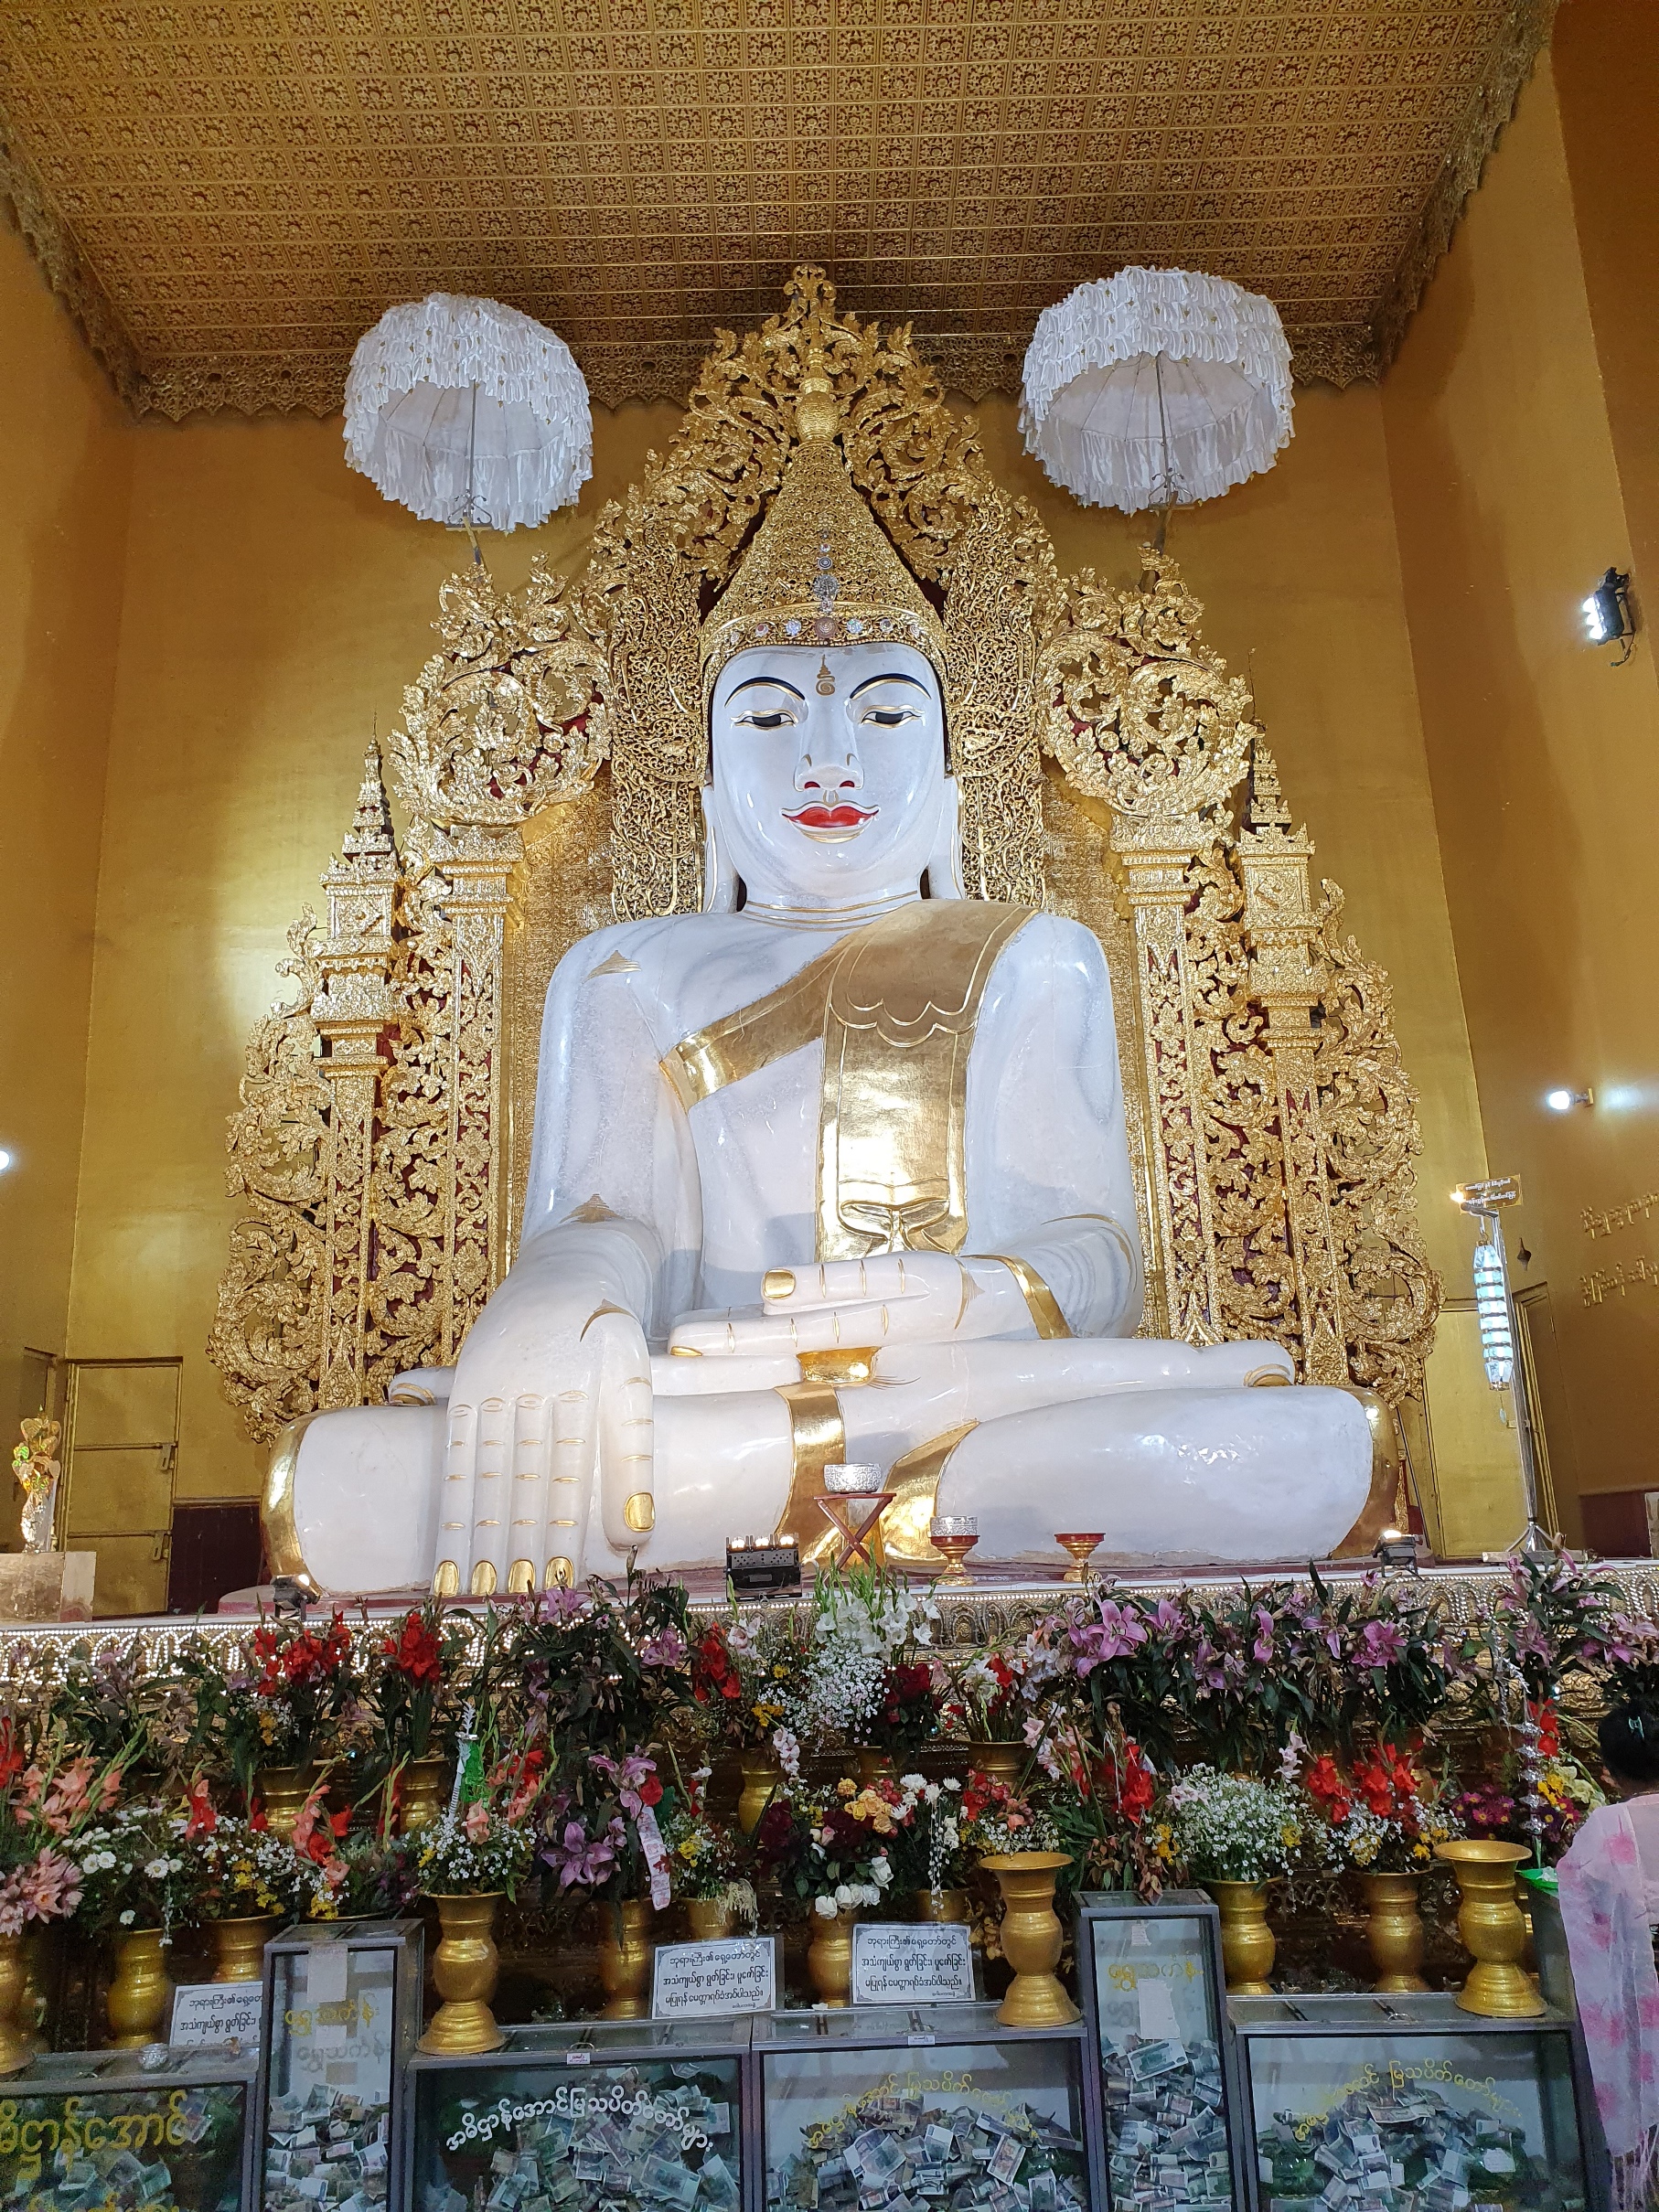 A központi épület főlátványossága a hófehér Buddha.